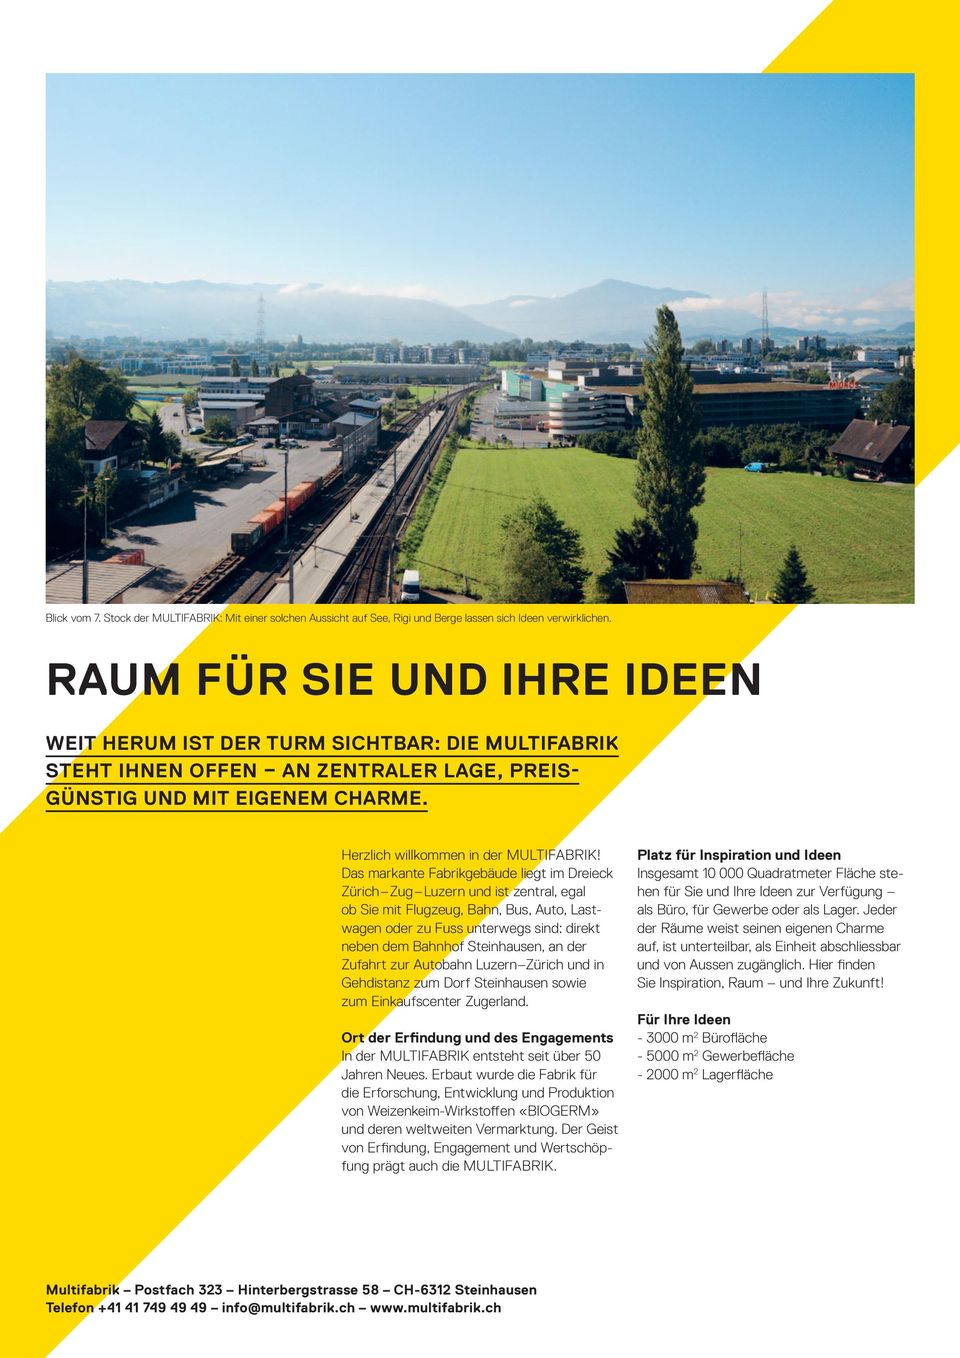 Das markante Fabrikgebäude liegt im Dreieck Zürich Zug Luzern und ist zentral, egal ob Sie mit Flugzeug, Bahn, Bus, Auto, Lastwagen oder zu Fuss unterwegs sind: direkt neben dem Bahnhof Steinhausen,